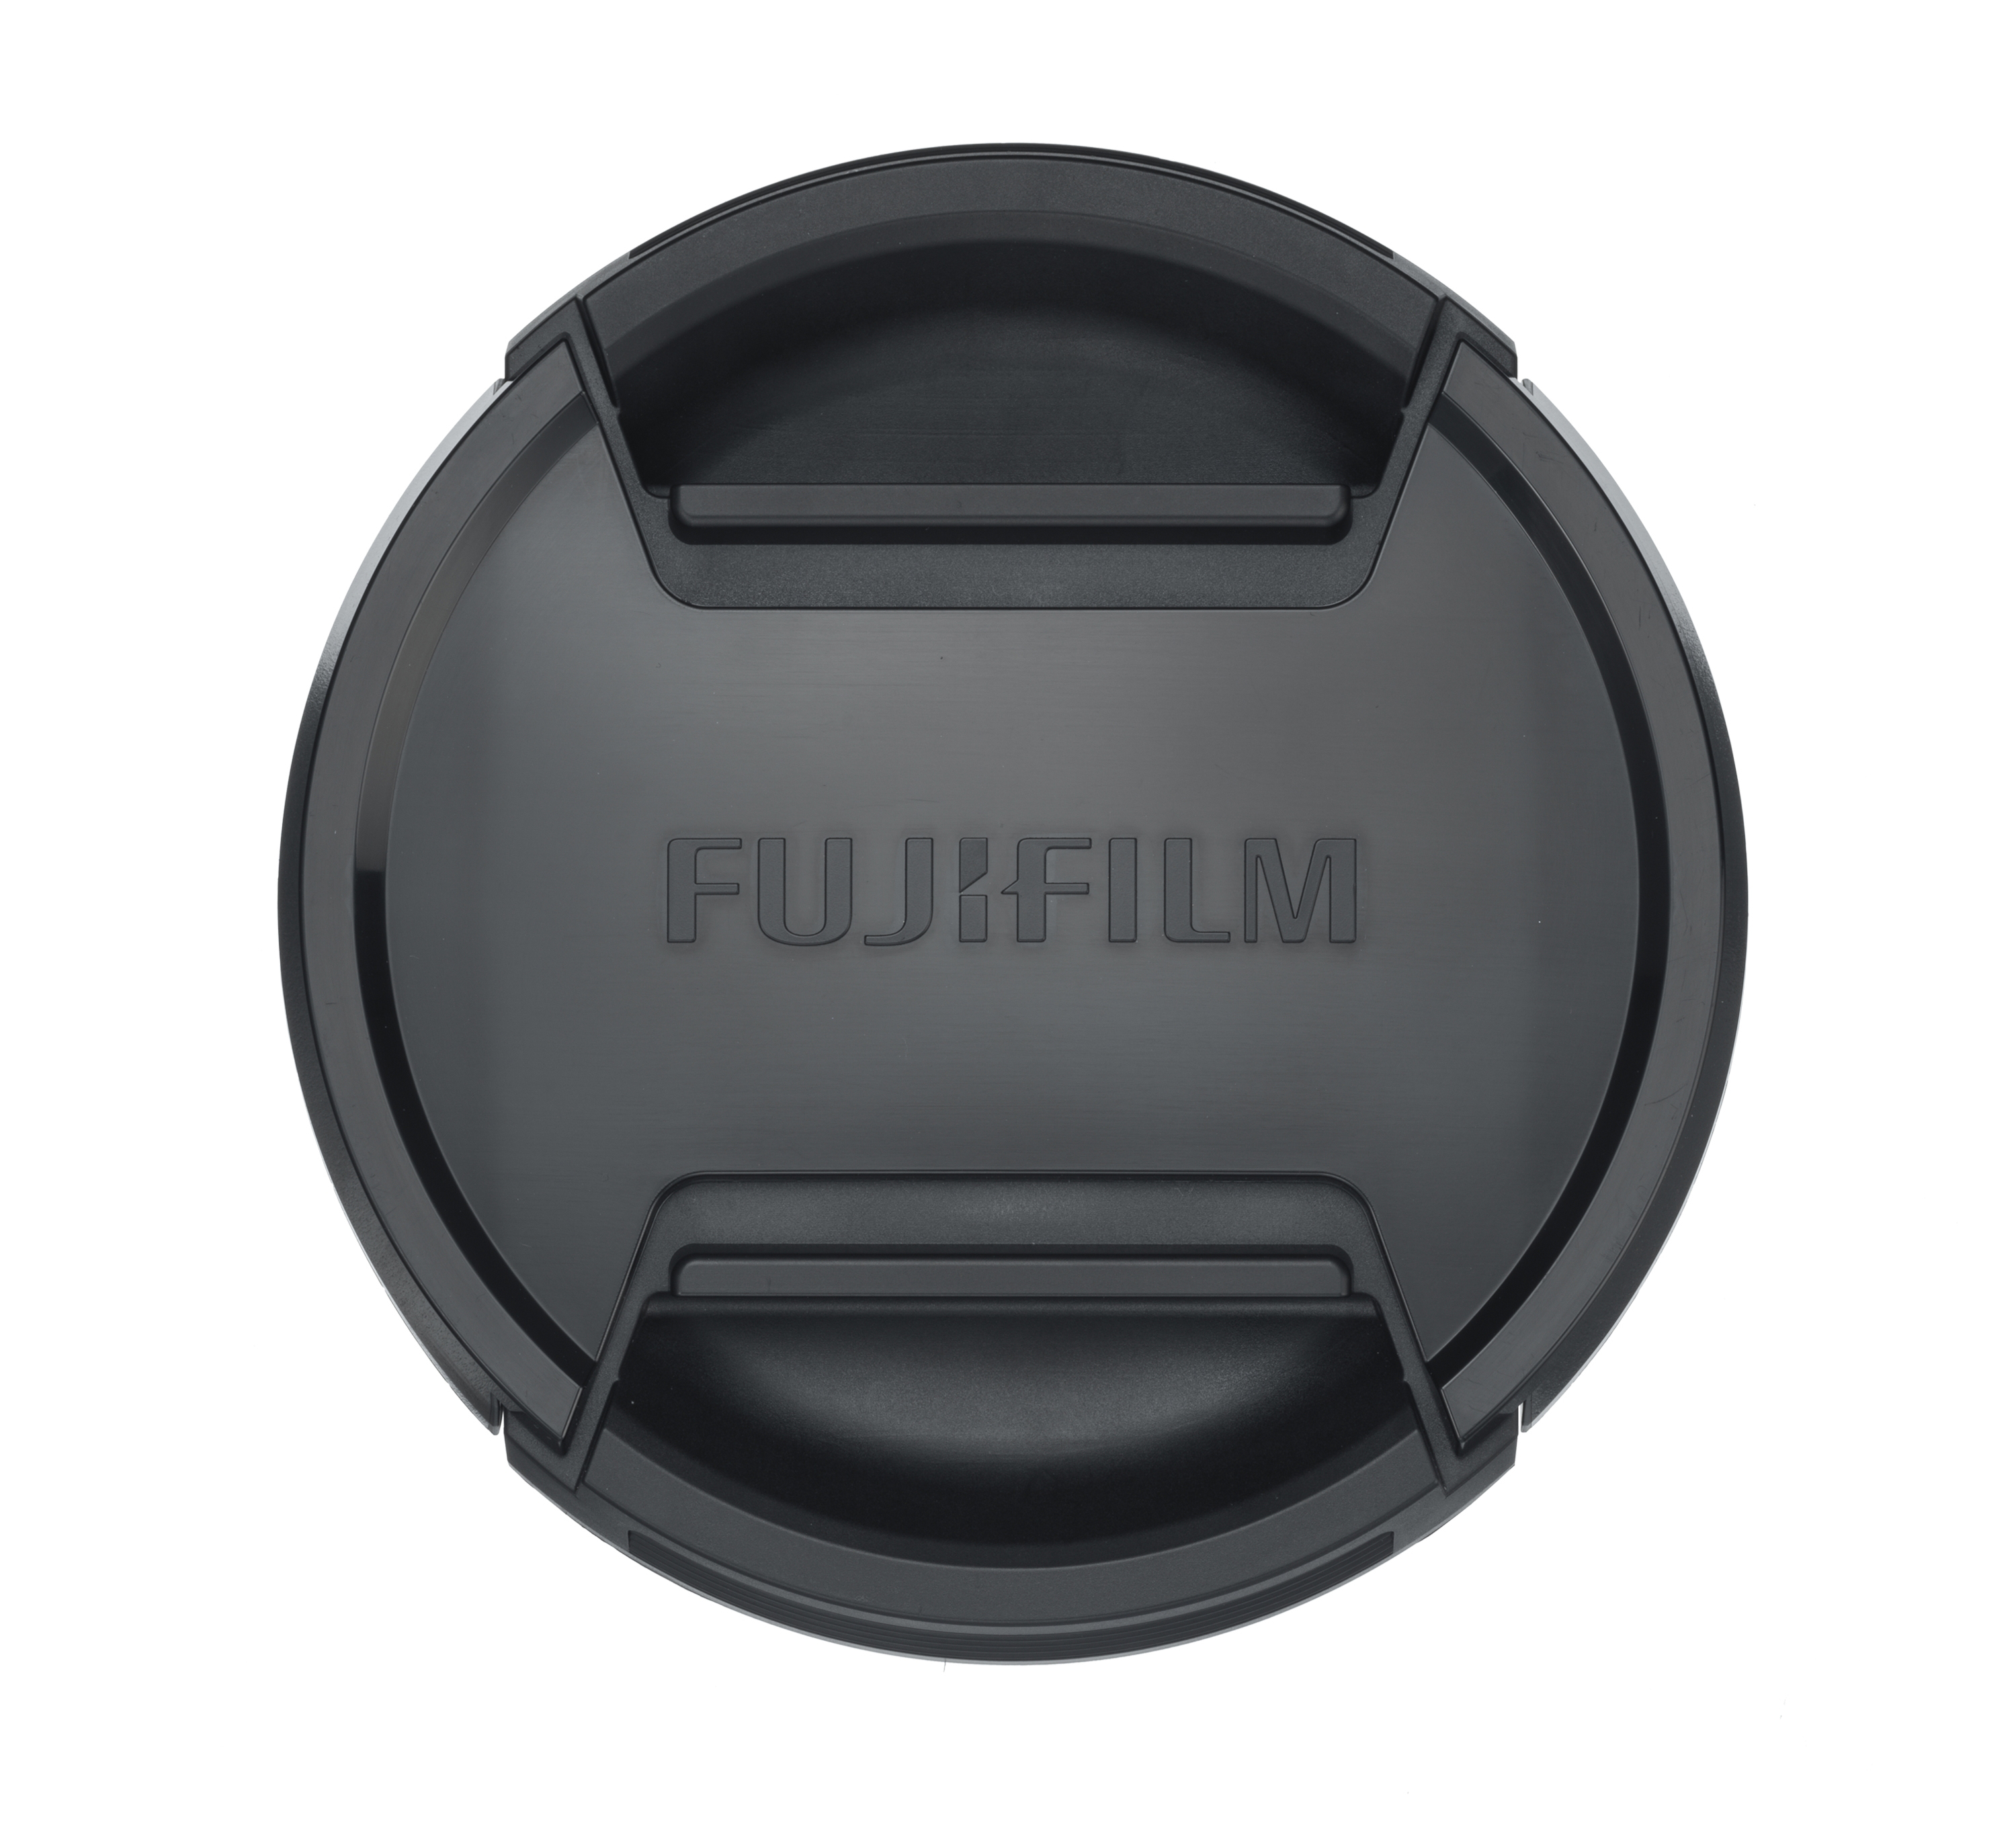 FUJIFILM FLCP-105 pour objectif XF 200mm f/2 R - Protège-objectif (Noir)